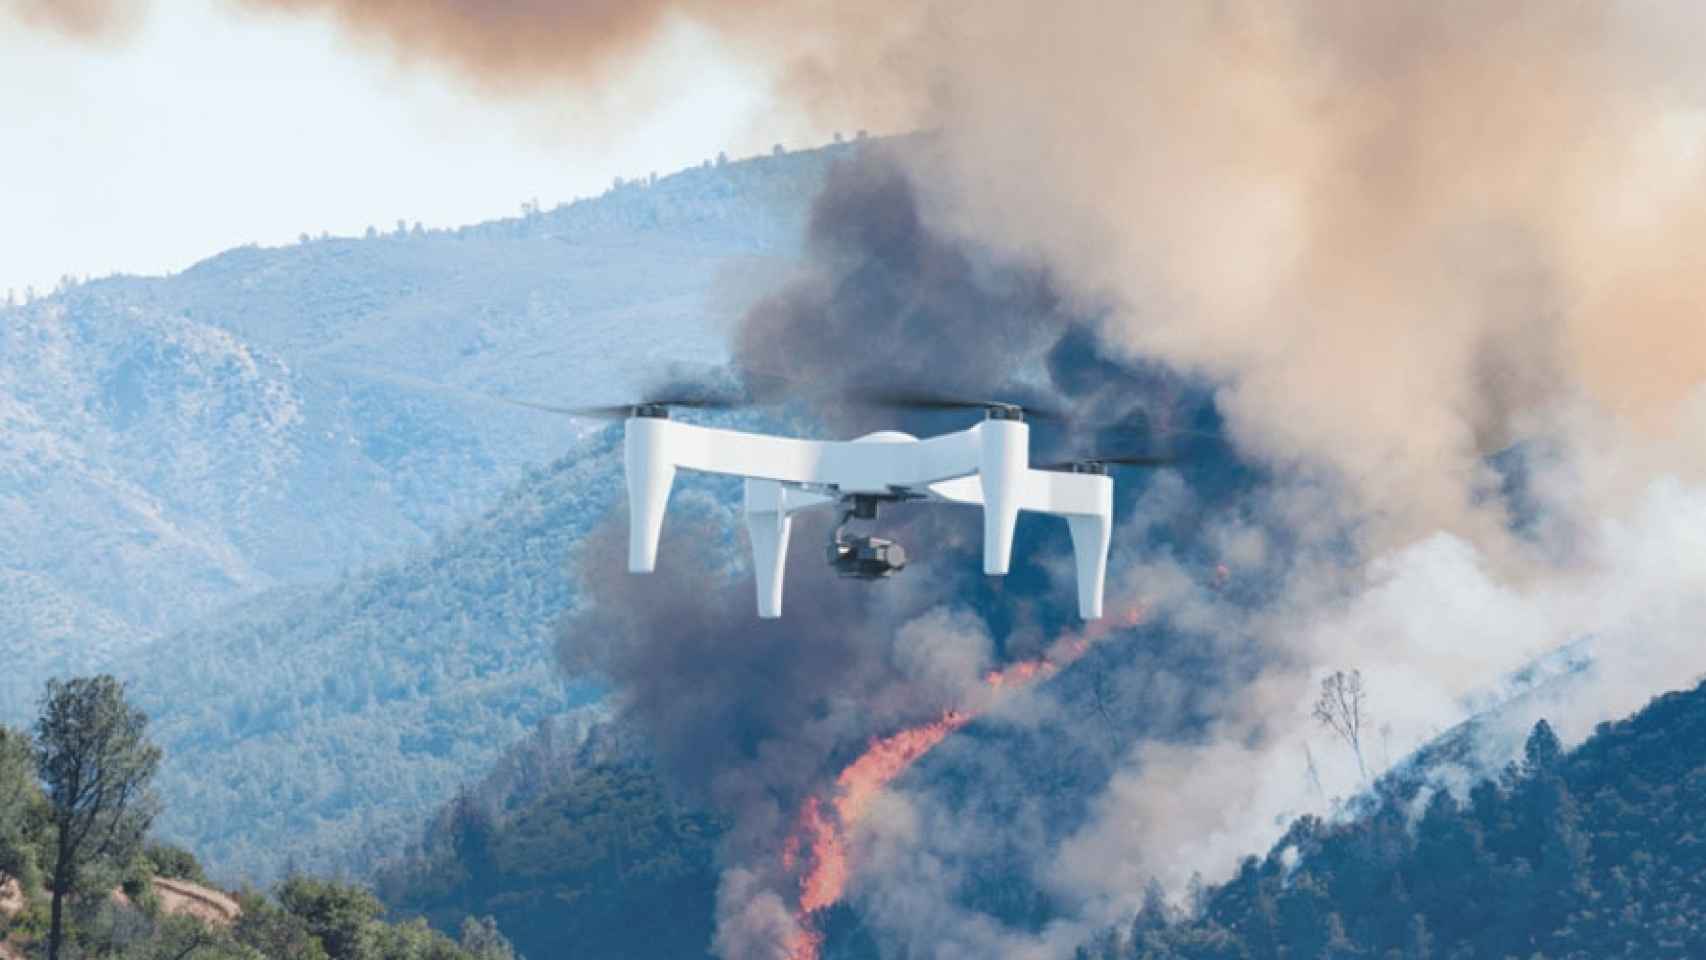 drone 2 horas en vuelo diseñado para volar 2 horas impossible aerospace us-1